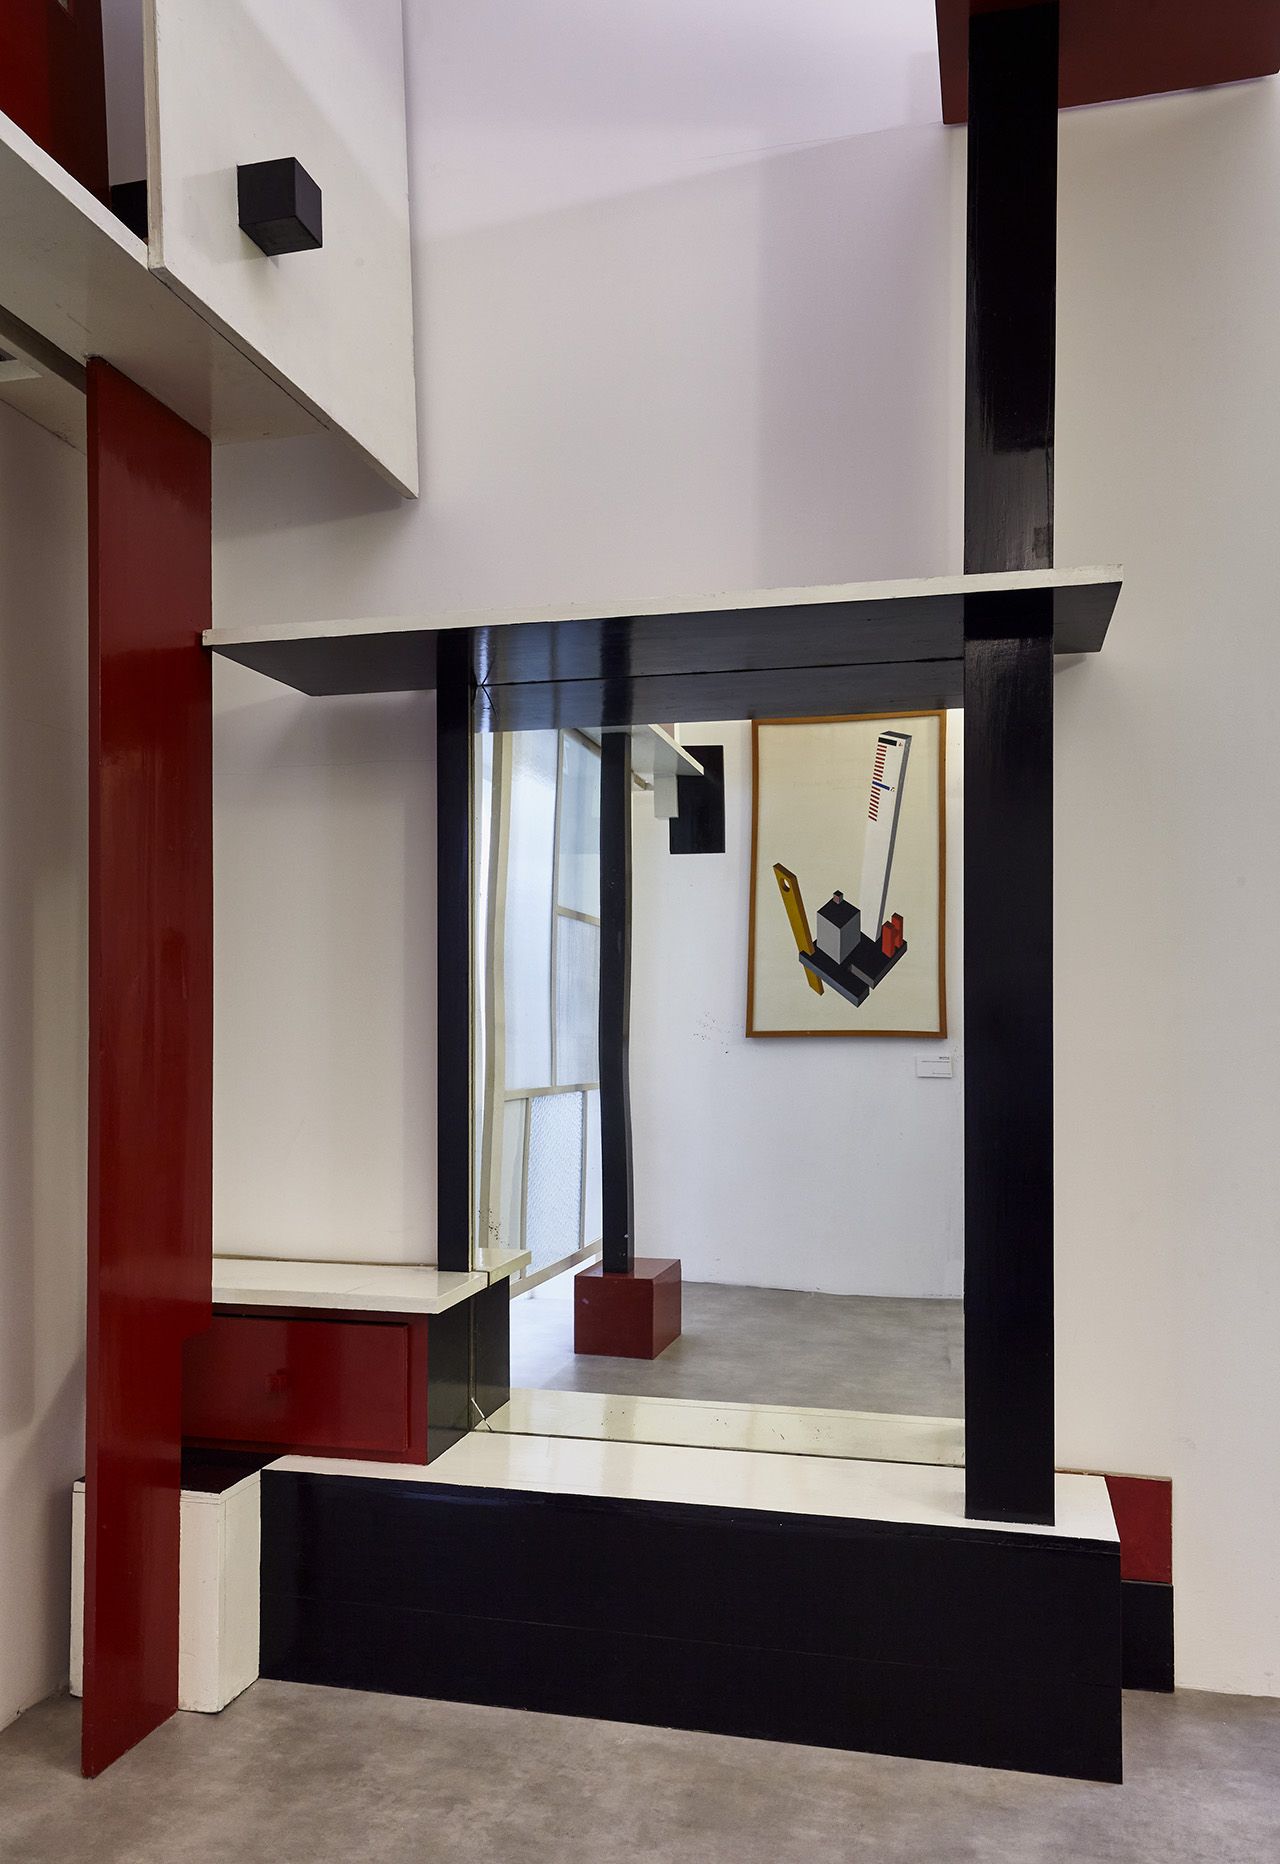 "Specchiera - anticamera casa Zampini" di Ivo Pannaggi- Musei Macerata